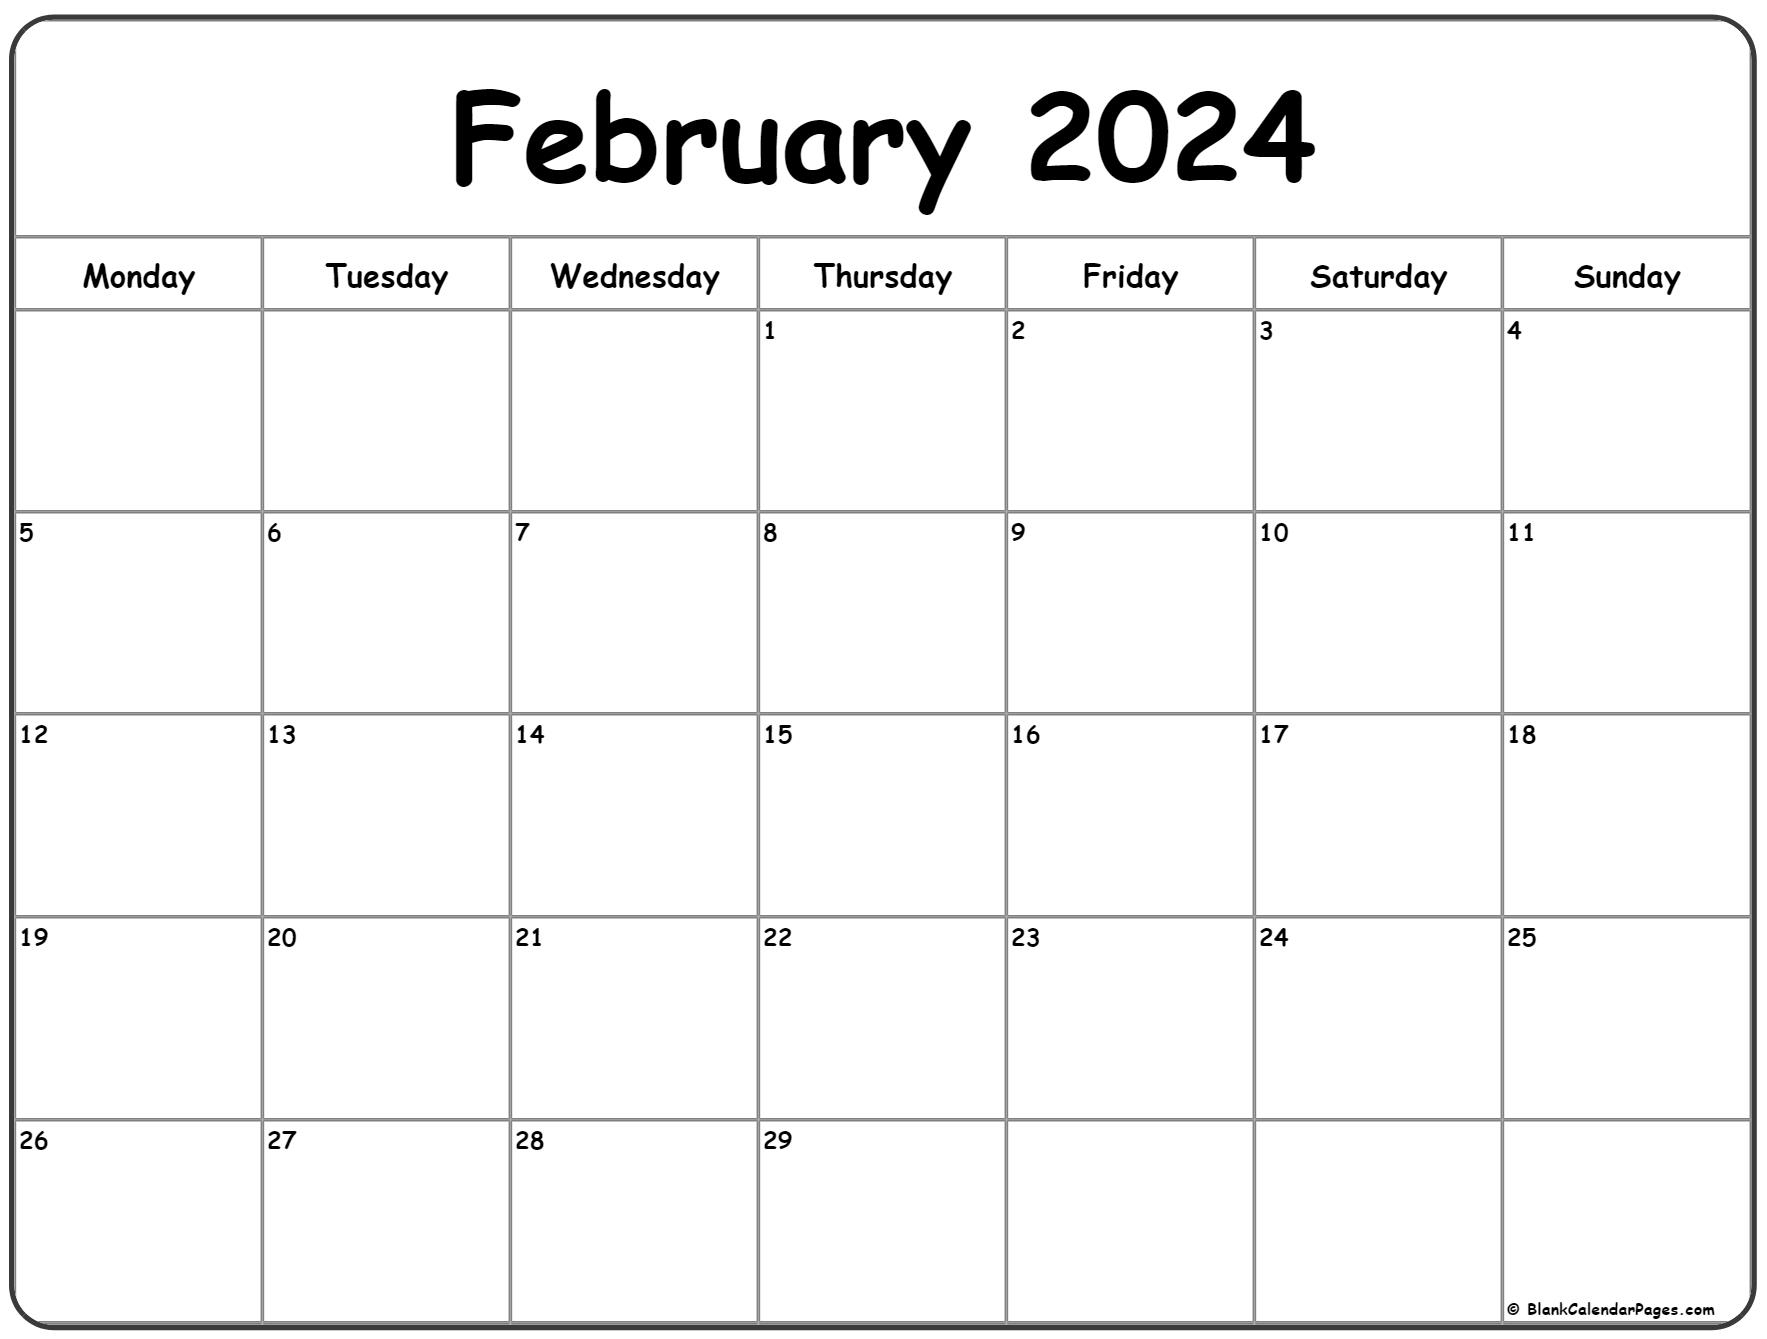 February 2024 Monday Calendar | Monday To Sunday for A-Printable-Calendar February 2024